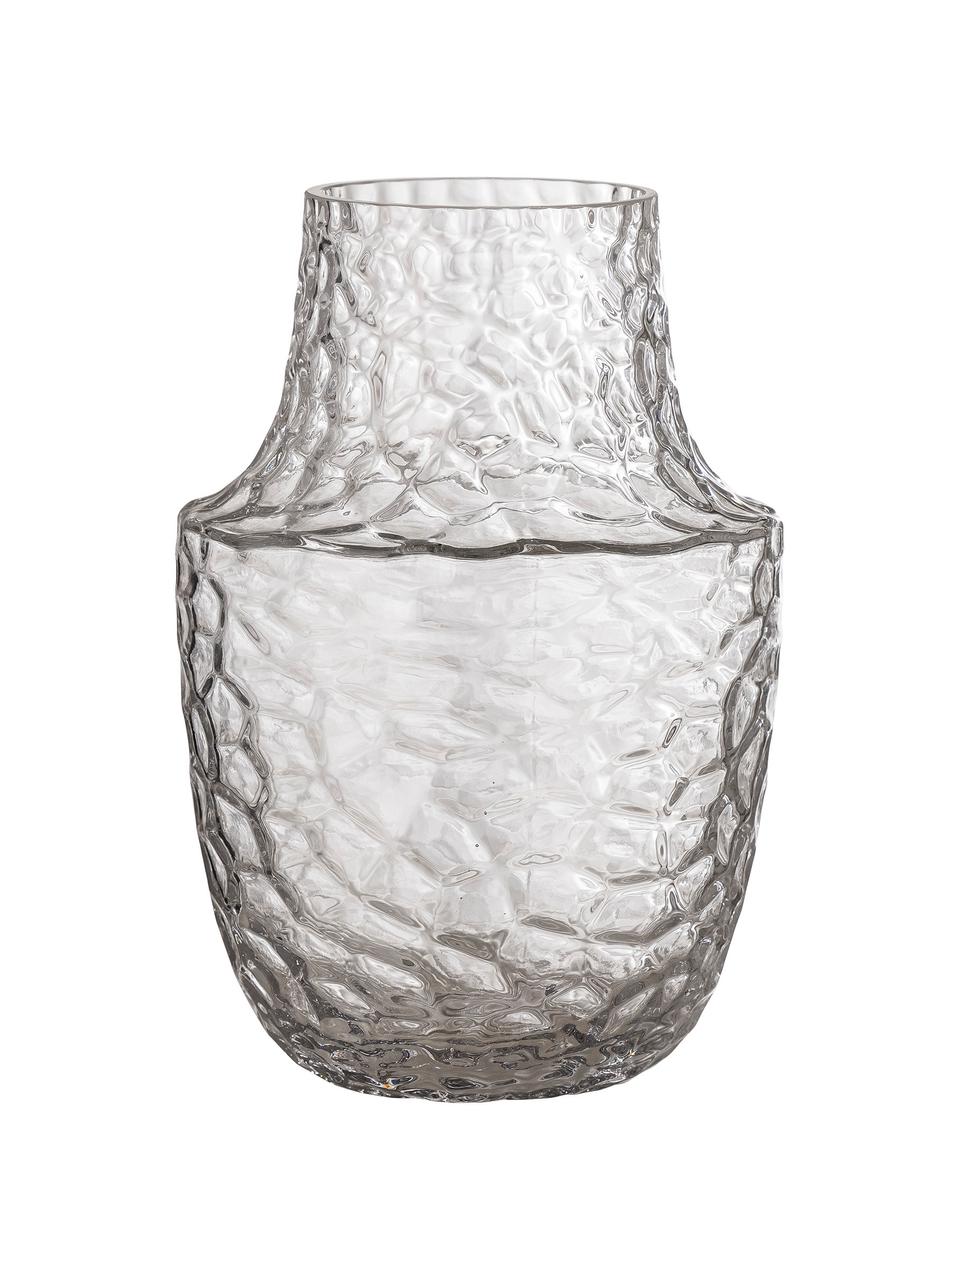 Skleněná váza Flo, Sklo, Transparentní, Ø 15 cm, V 23 cm